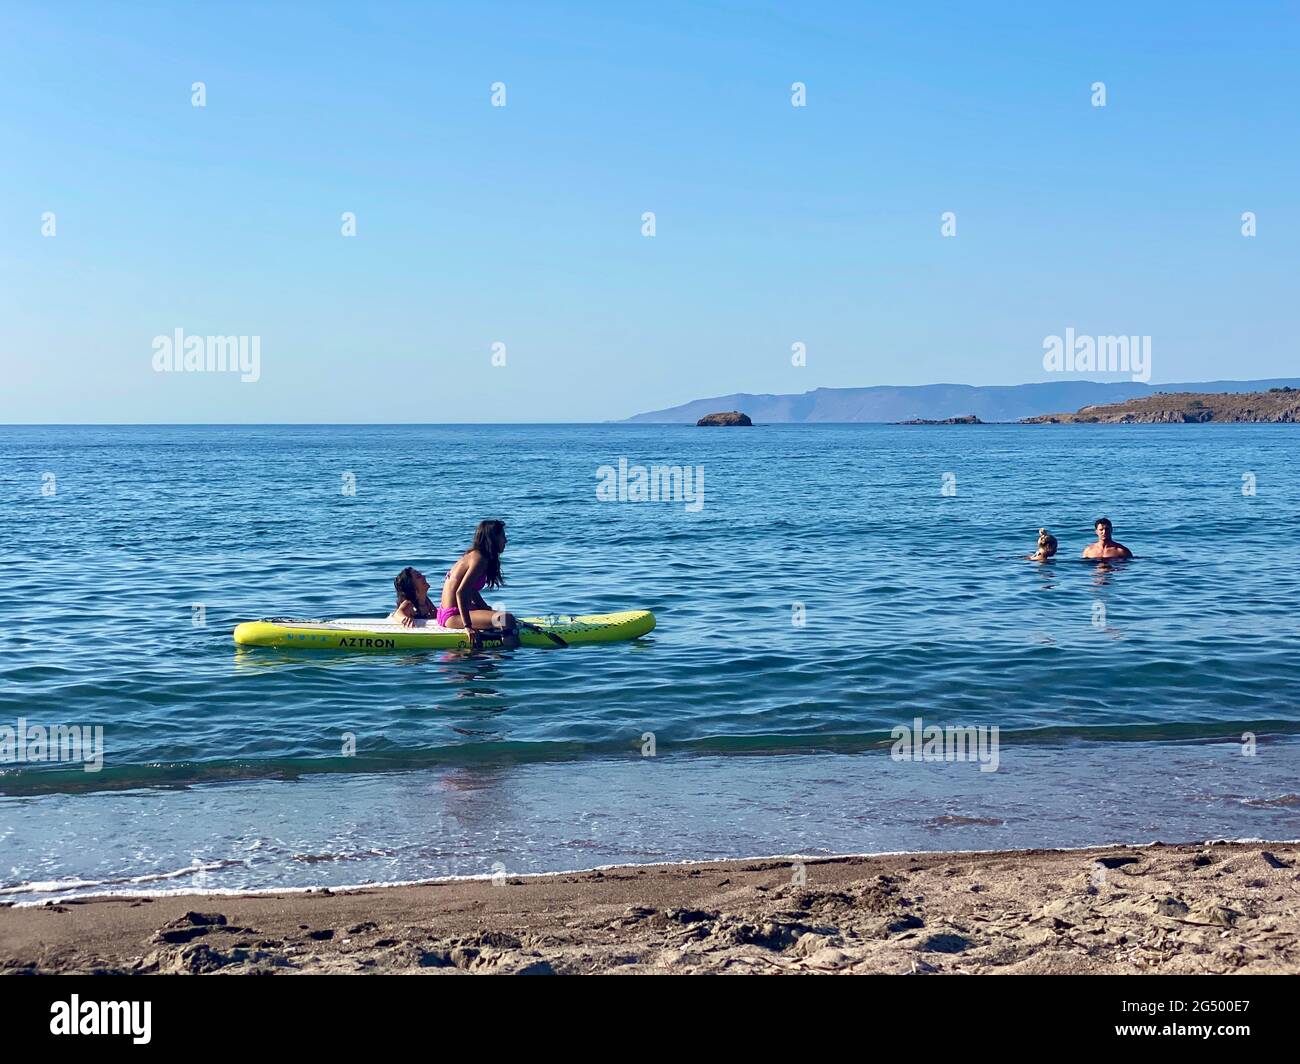 Sup board immagini e fotografie stock ad alta risoluzione - Alamy